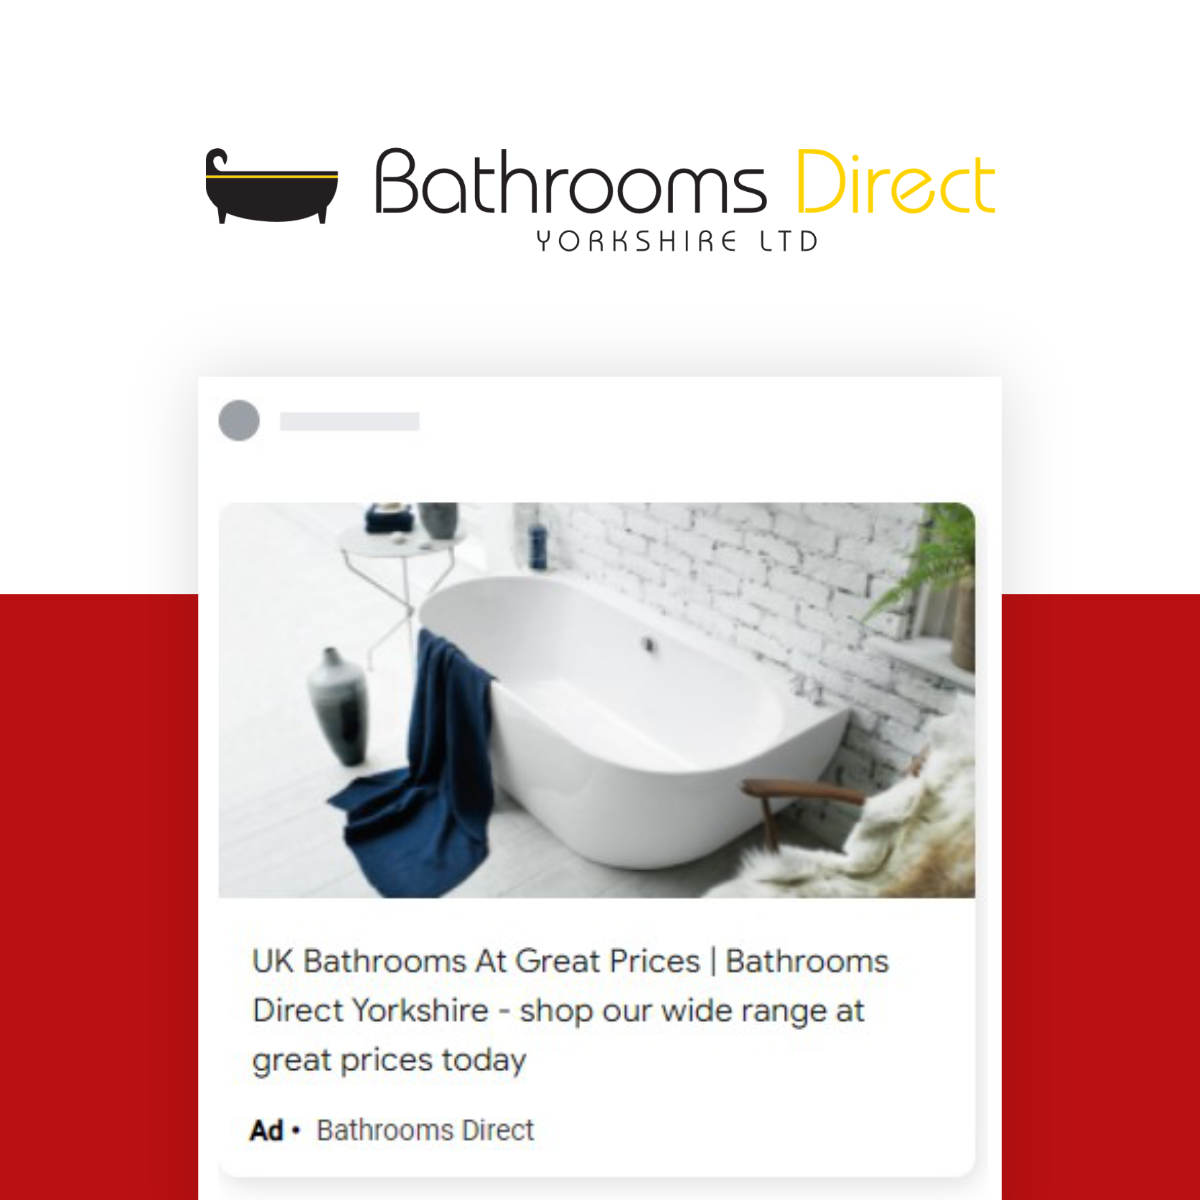 Bathrooms Direct: SEO & PPC